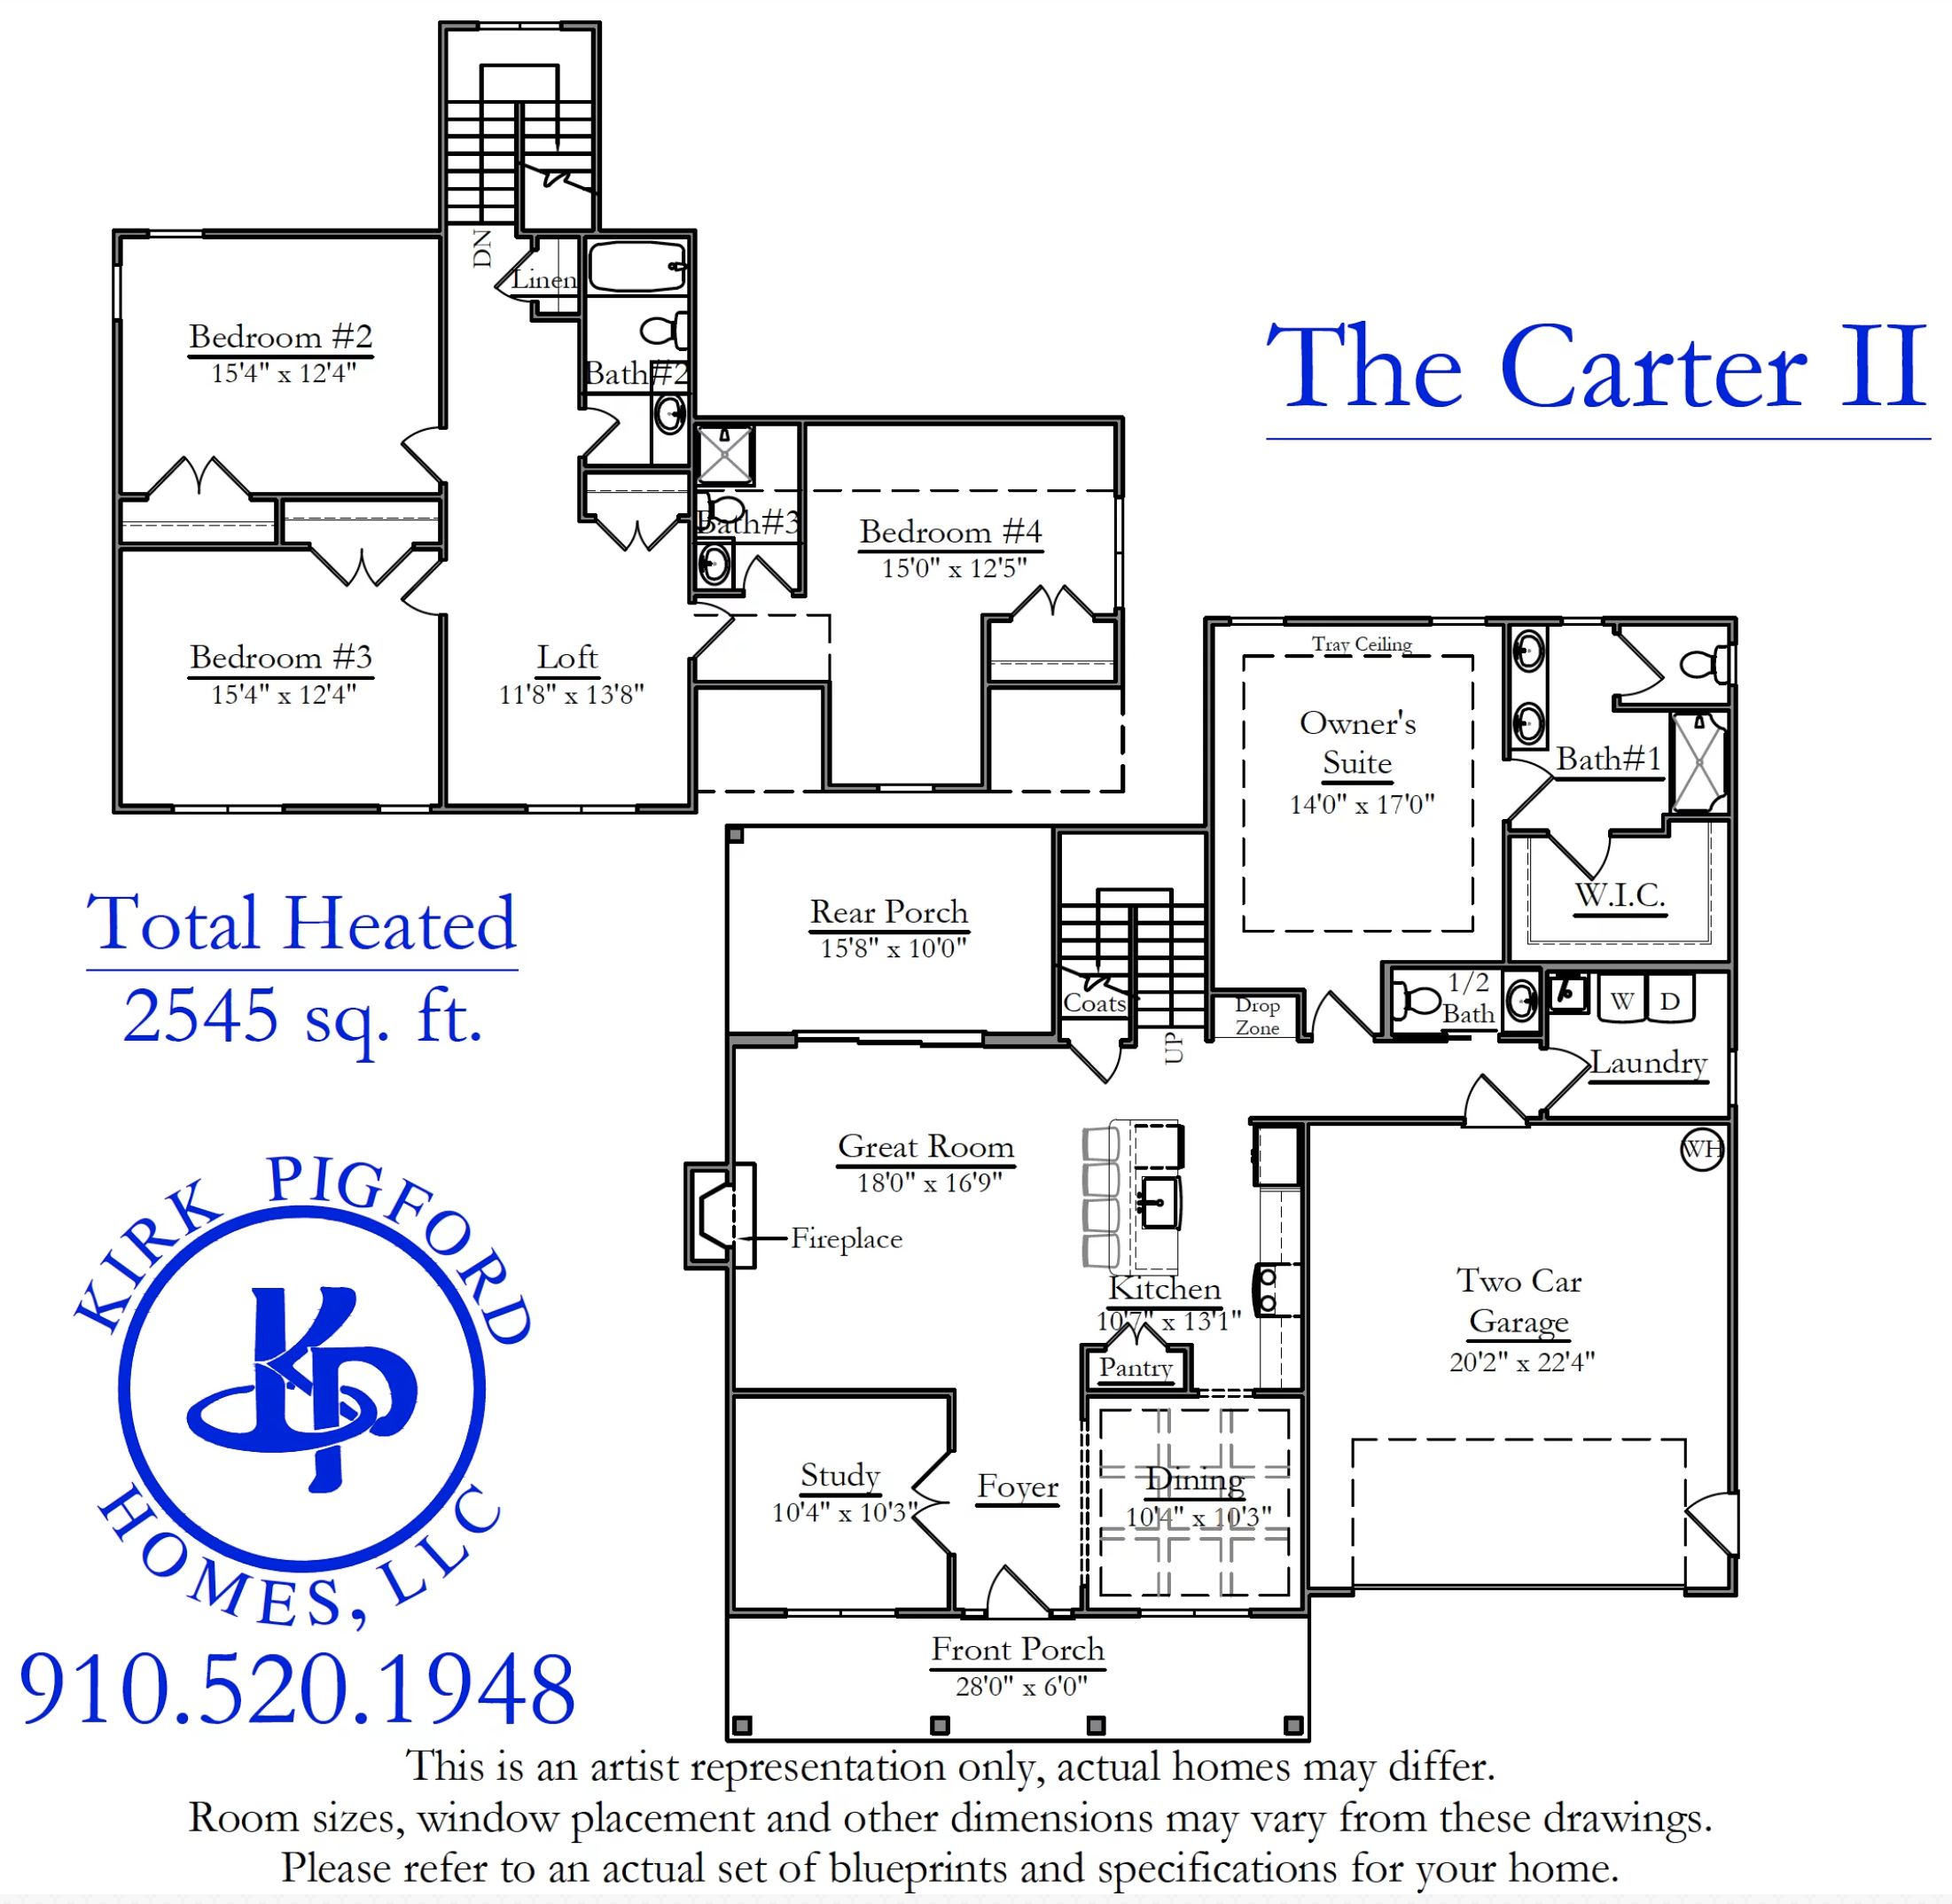 The Carter II floor plan image